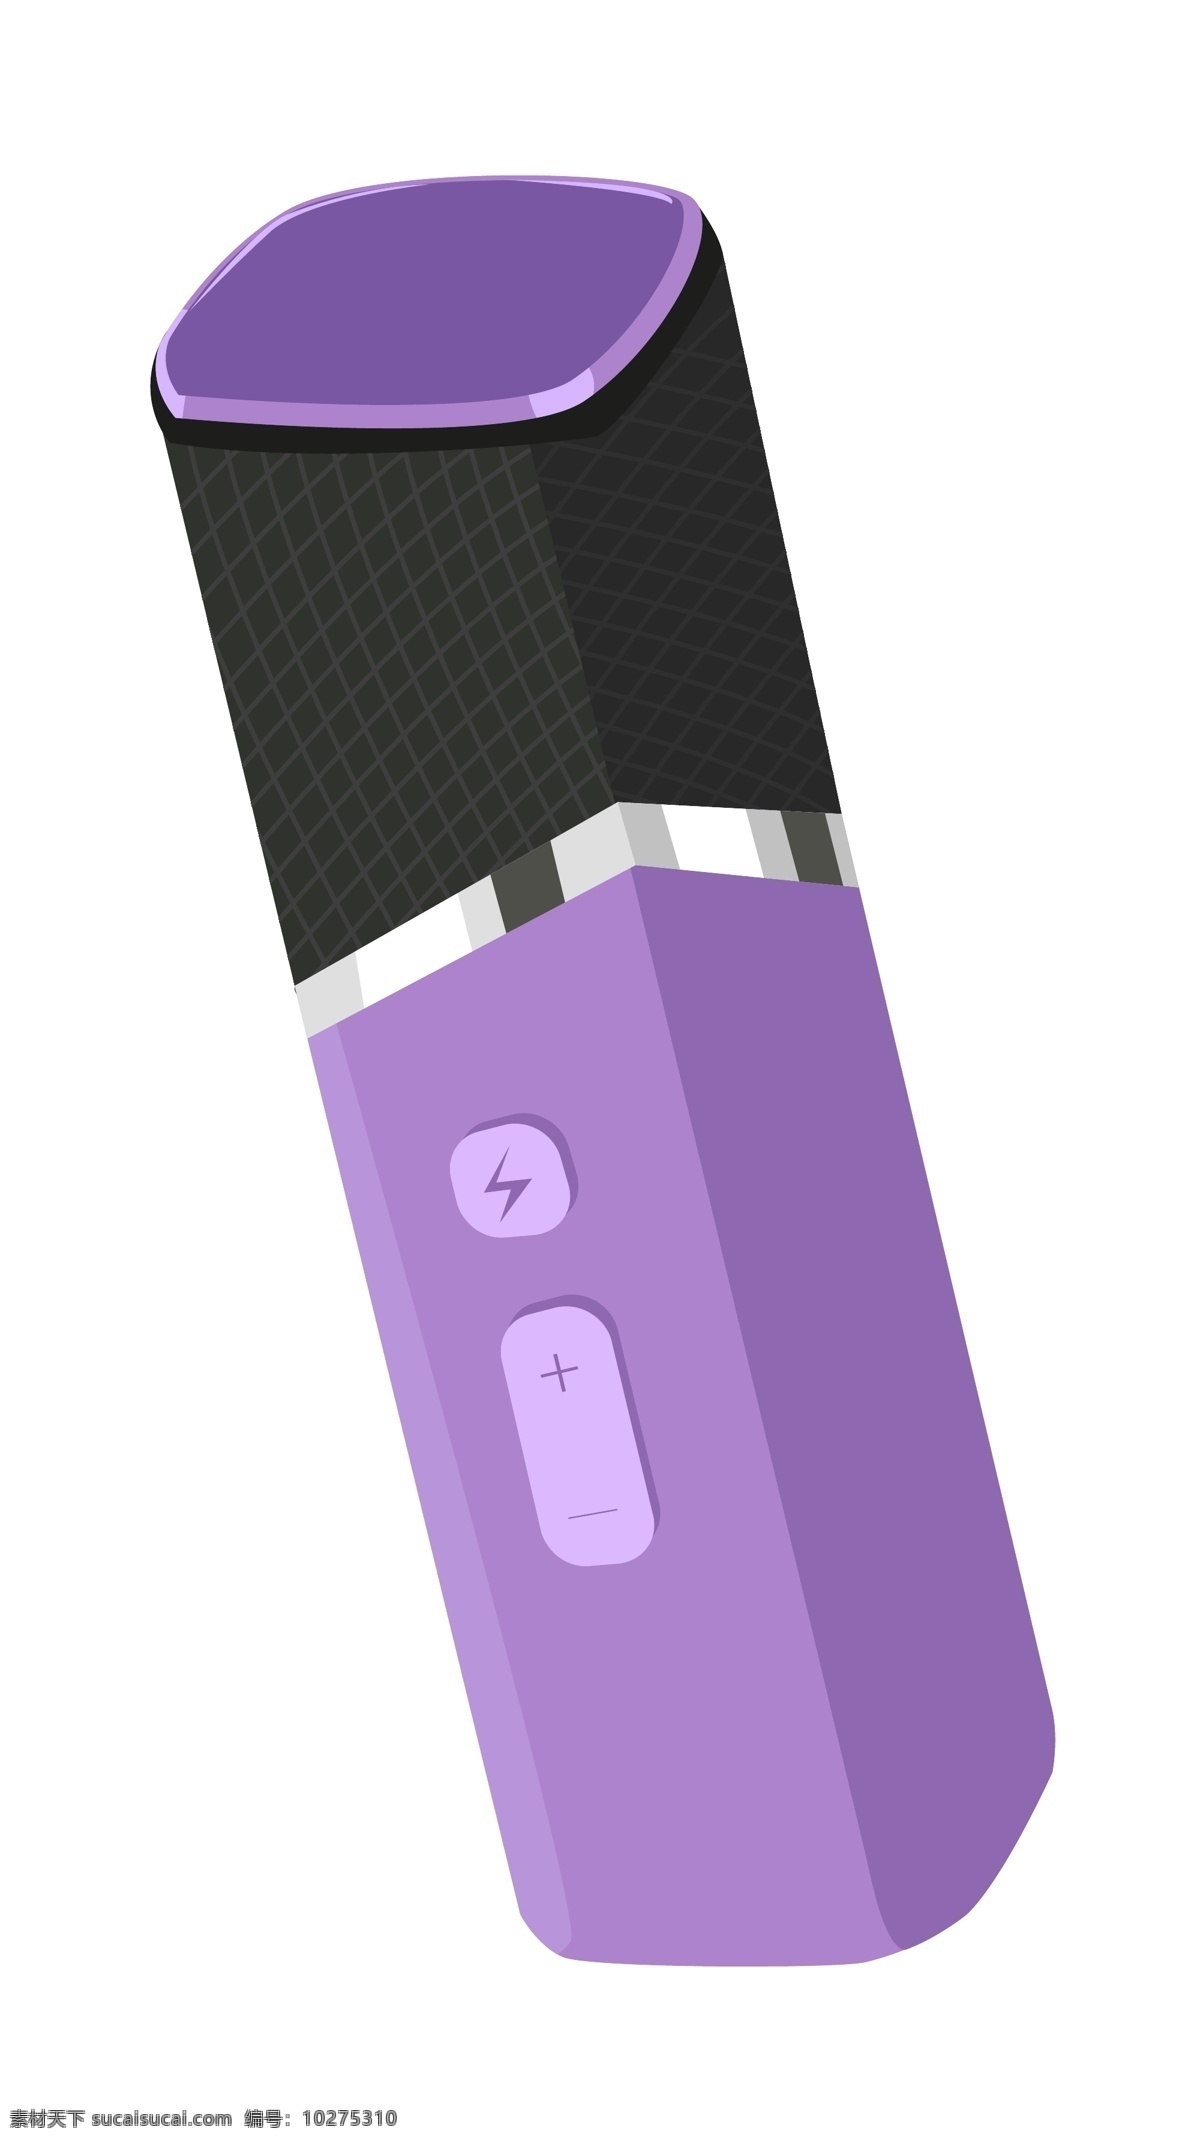 紫色 话筒 手绘 插画 紫色的话筒 漂亮的话筒 手绘话筒 卡通话筒 讲话话筒 唱歌话筒 话筒插画